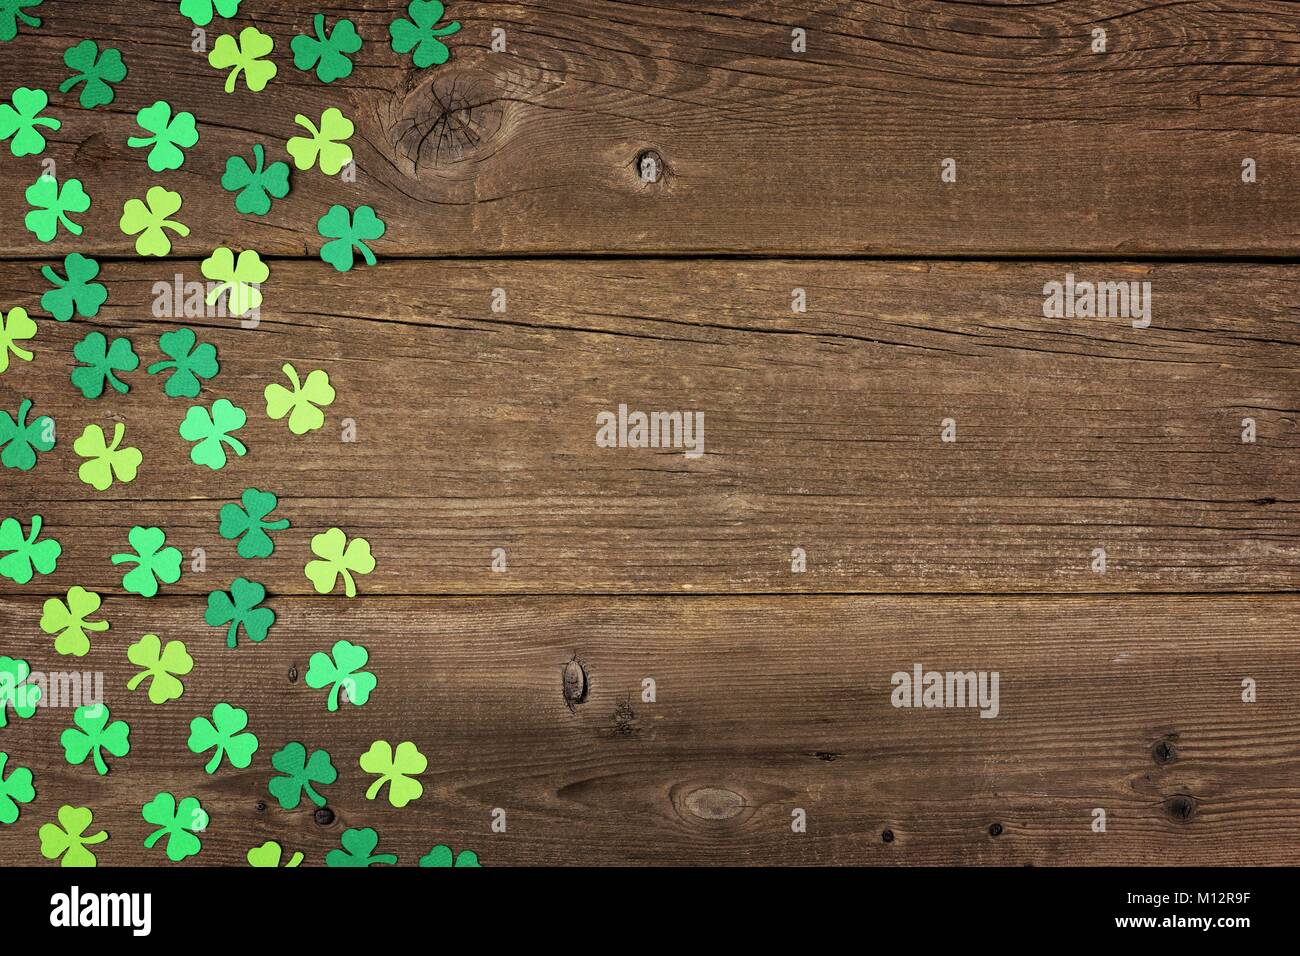 St Patricks Day Seite Papier shamrocks über ein altes rustikales Holz Hintergrund Stockfoto